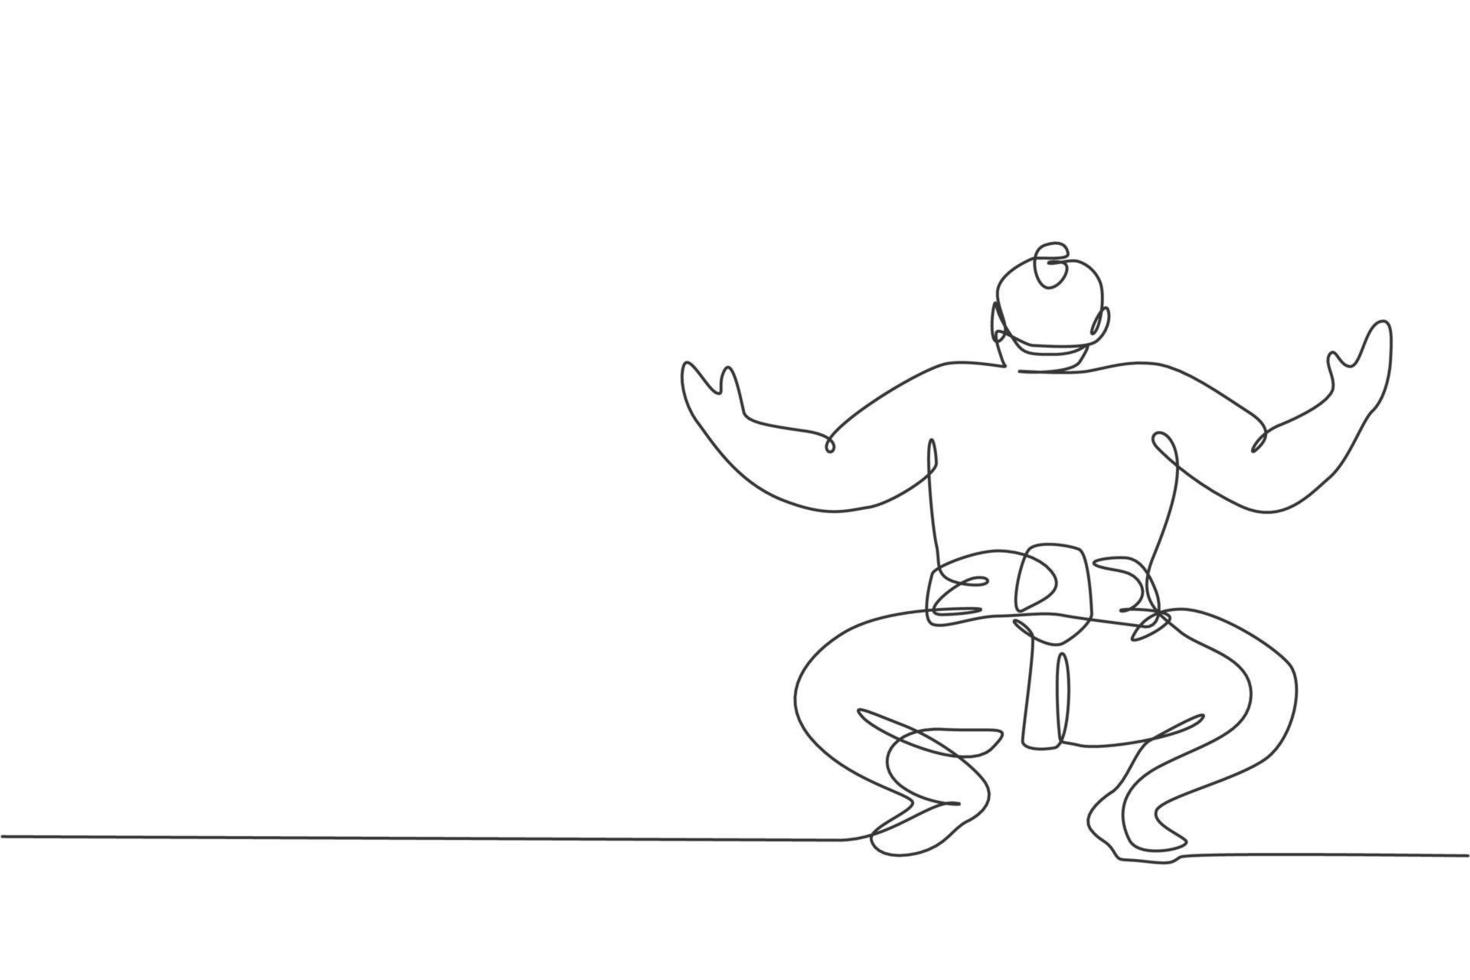 um desenho de linha contínua do jovem rikishi japonês grande se prepara para lutar no torneio do festival. conceito tradicional de esporte de sumô. ilustração em vetor design gráfico de desenho de linha única dinâmica